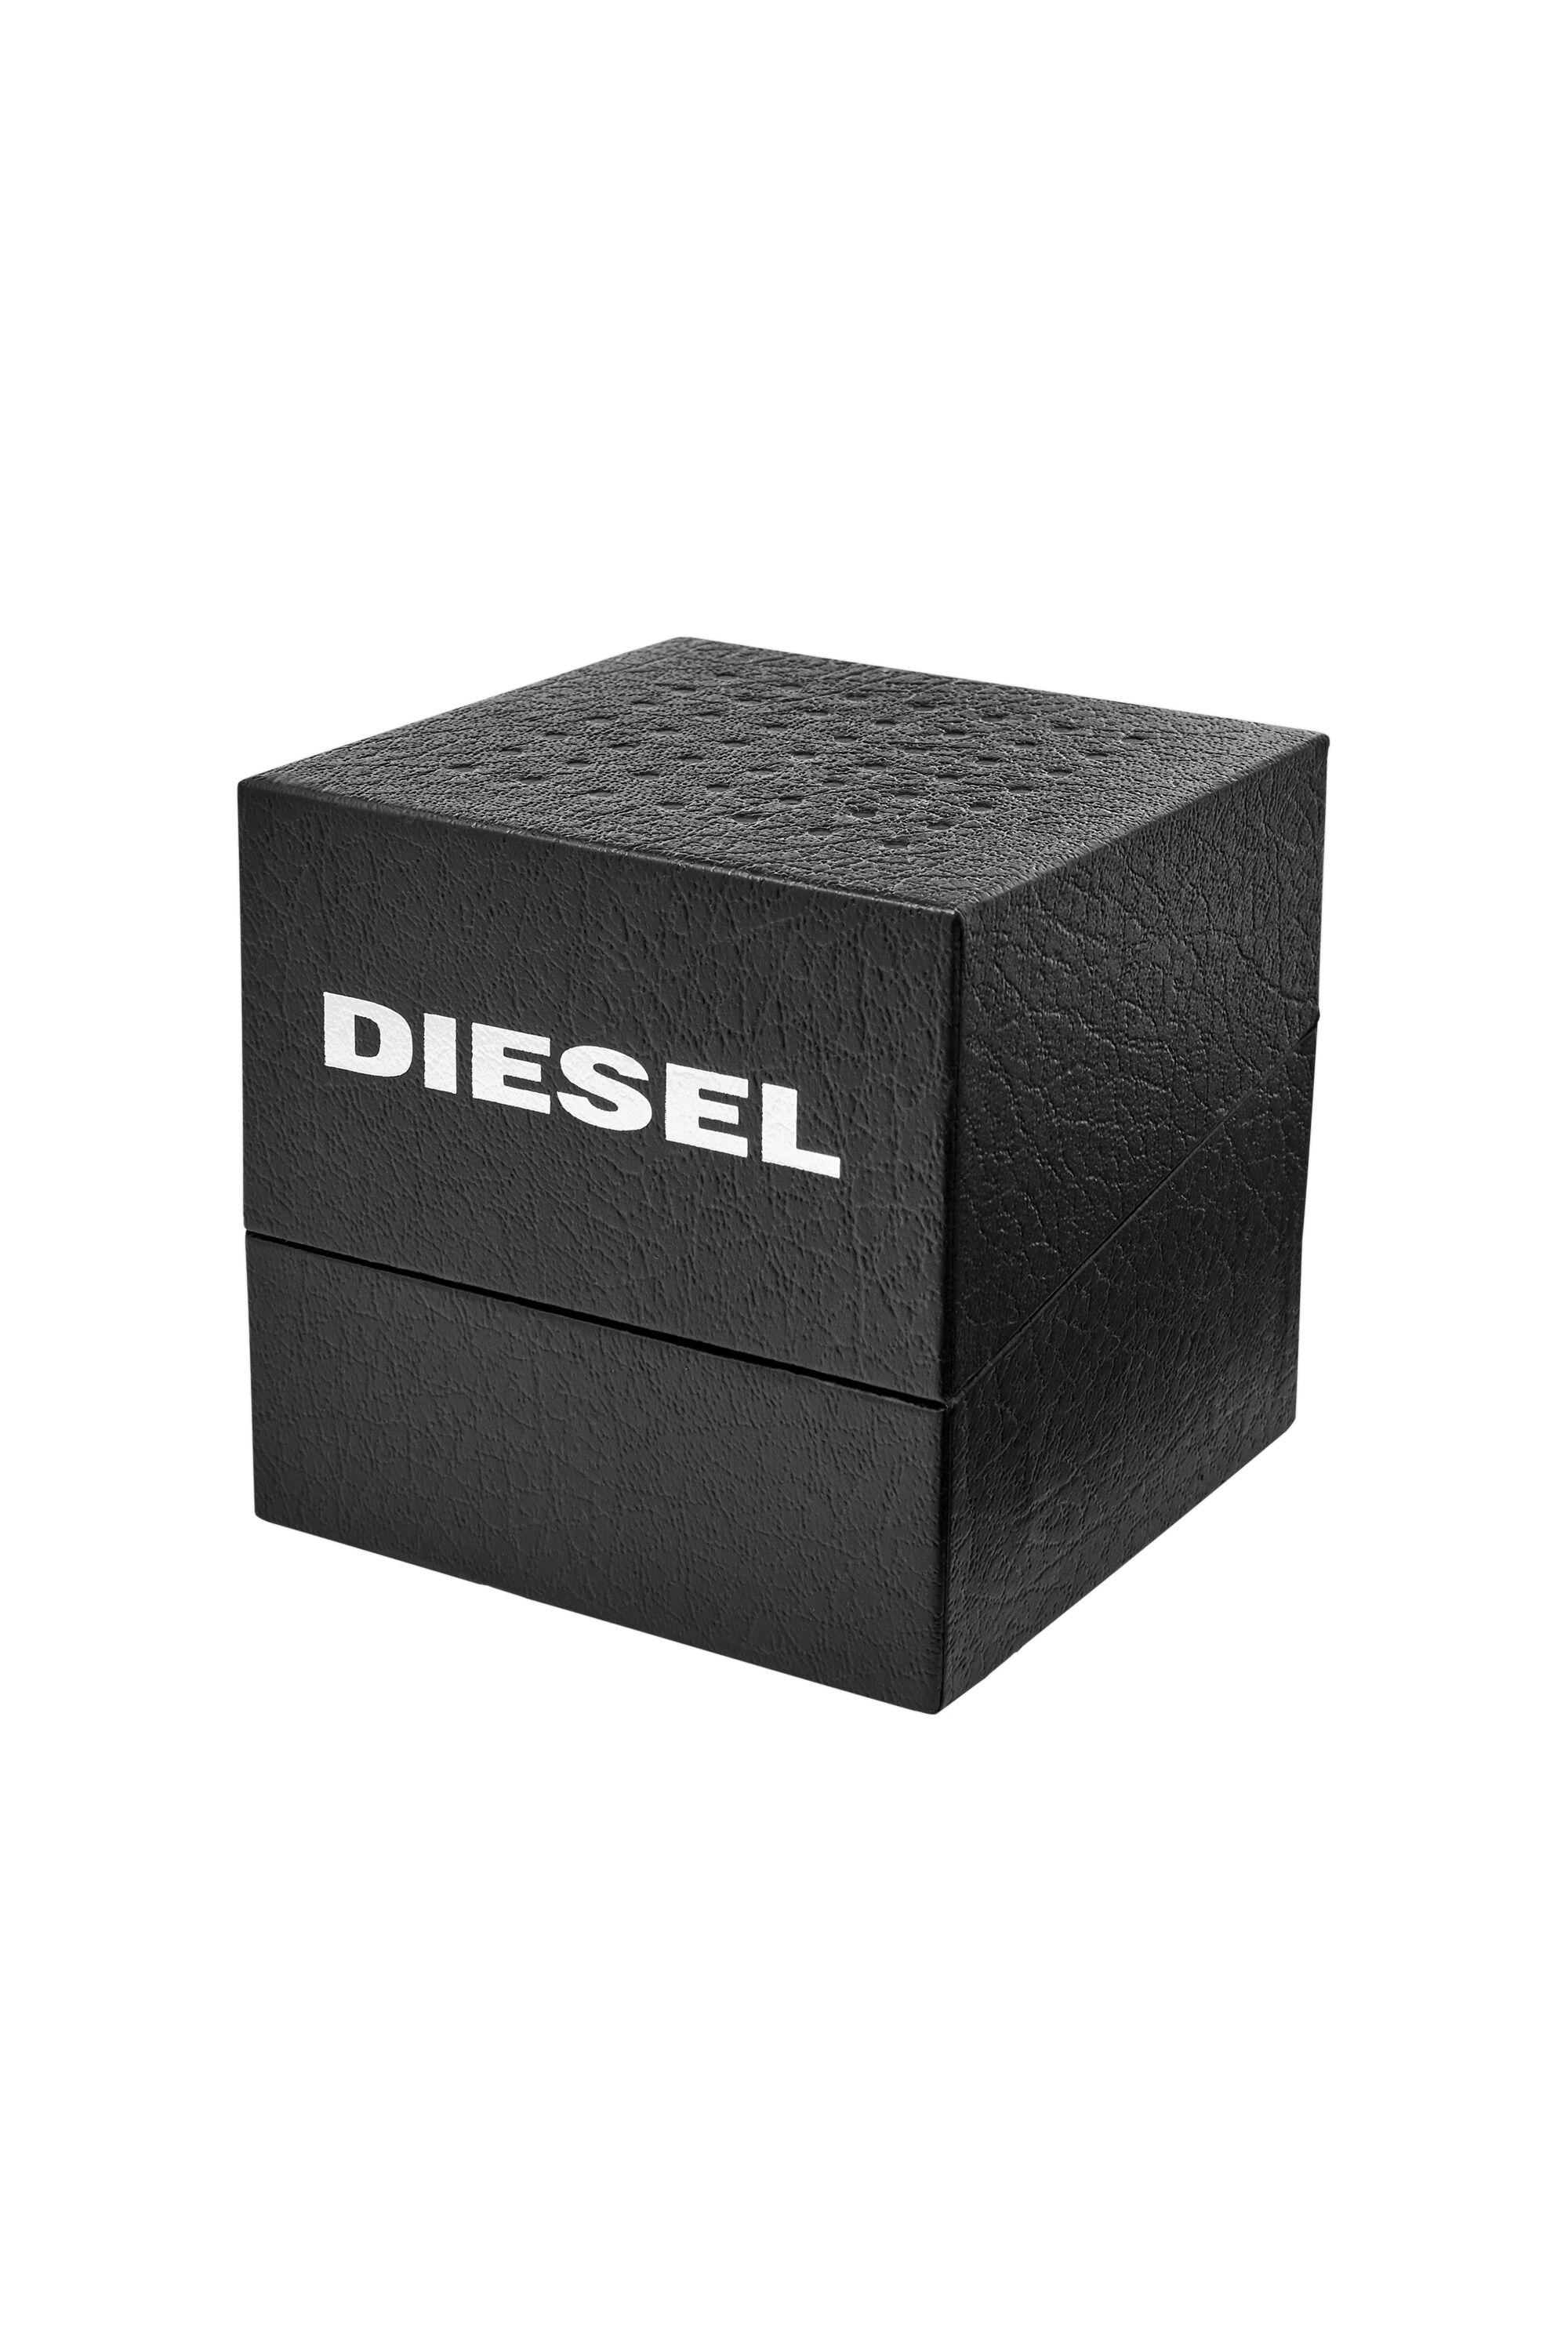 Diesel - DZ1906, Nero - Image 6